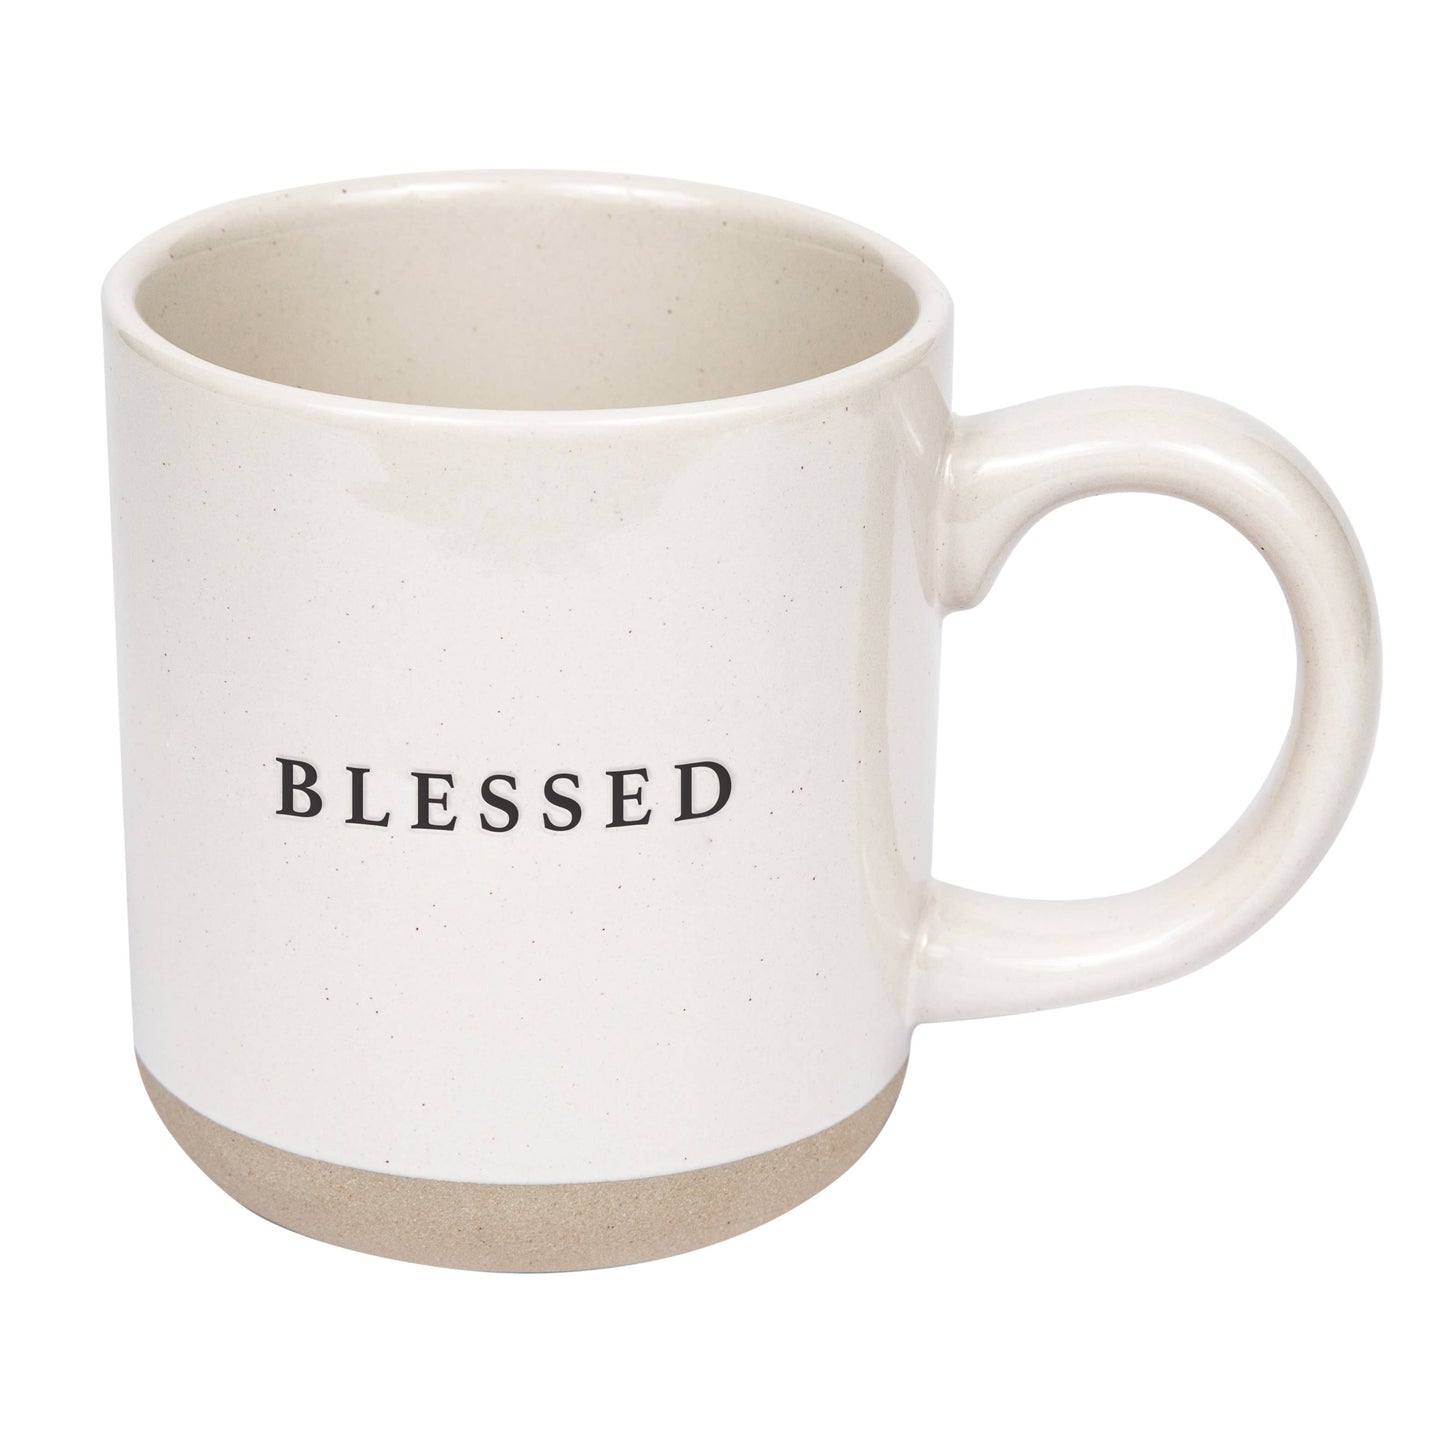 Blessed Stoneware Coffee Mug - 14oz